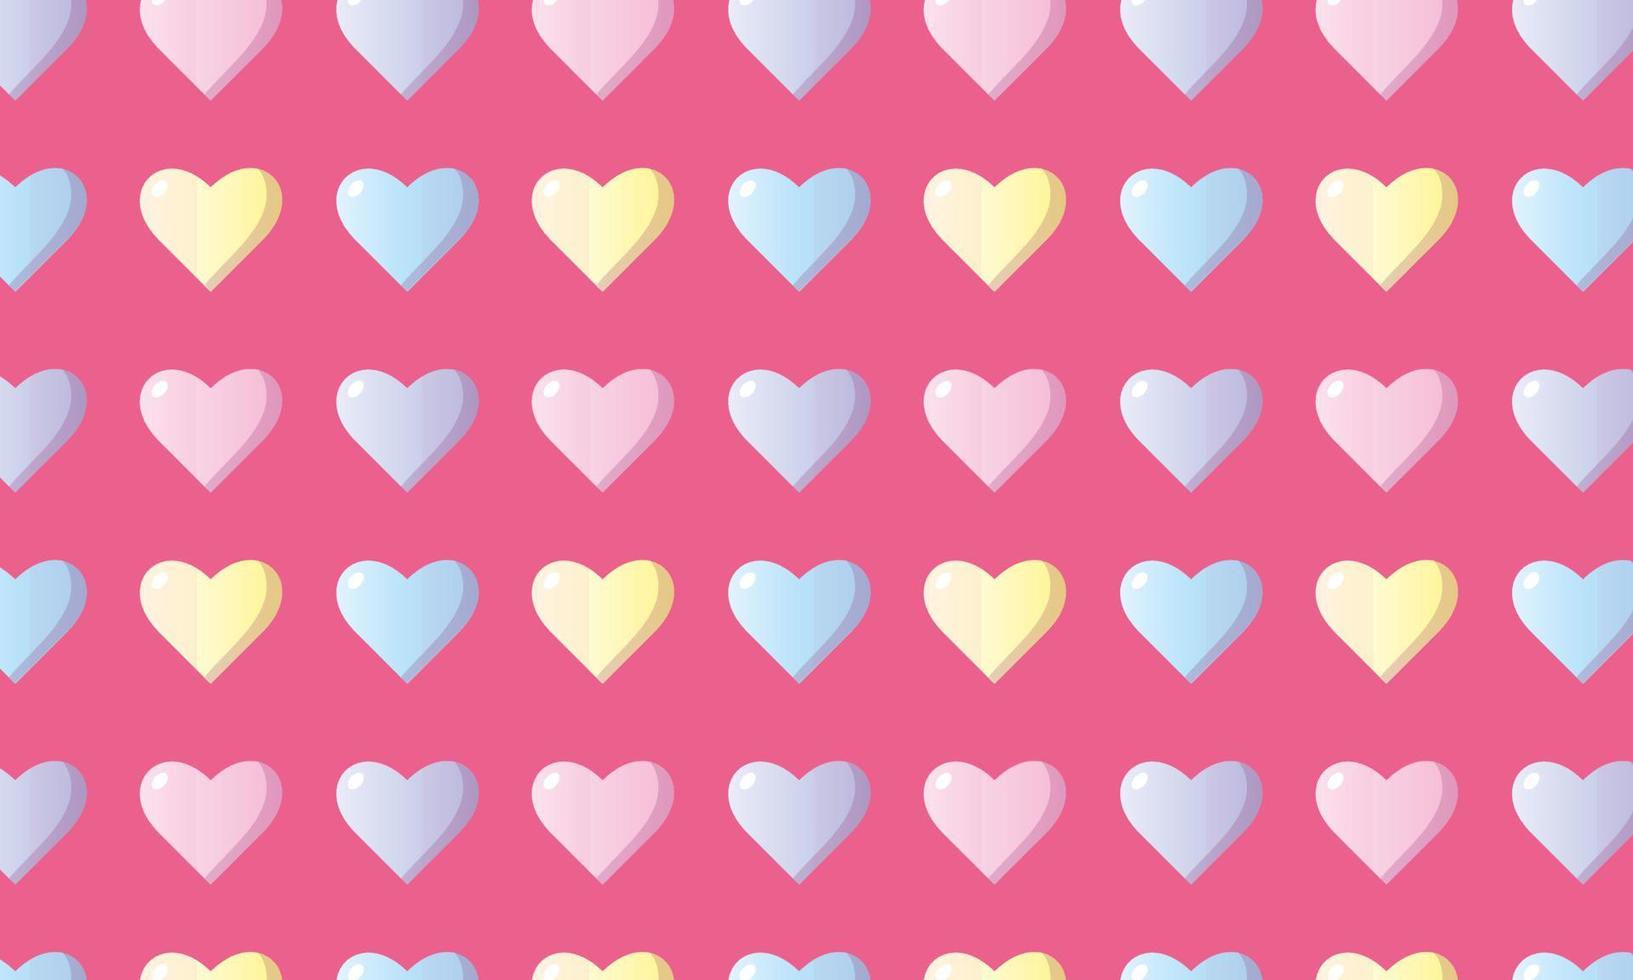 upprepa mönster av färgrik hjärtan på en rosa bakgrund vektor